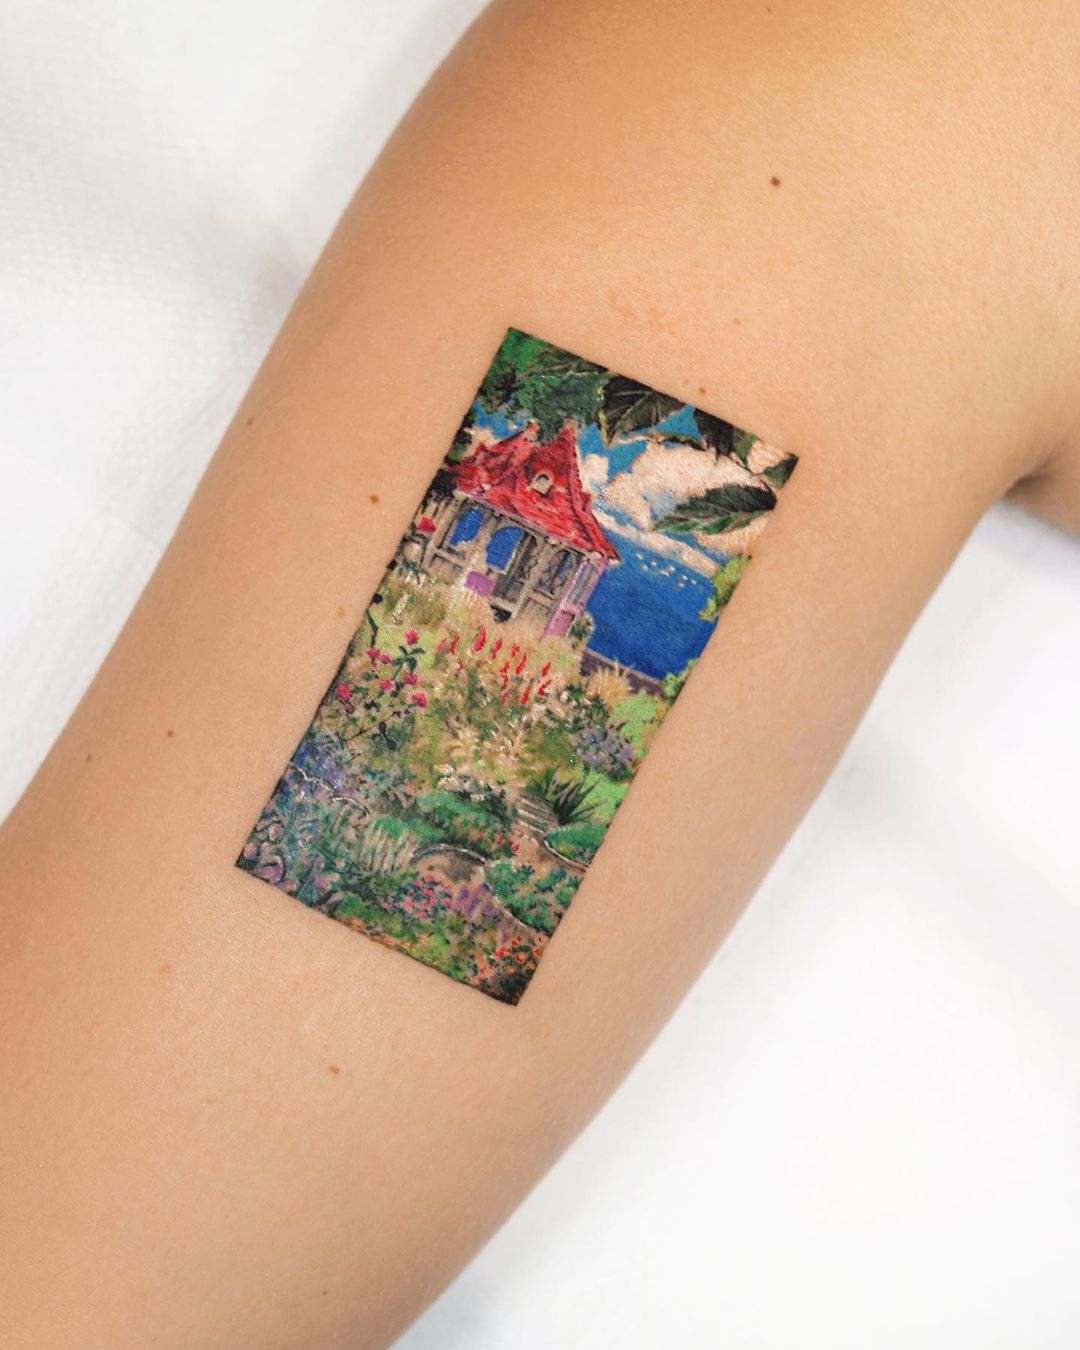 Minimalistic forest tattoo by tattooist yun